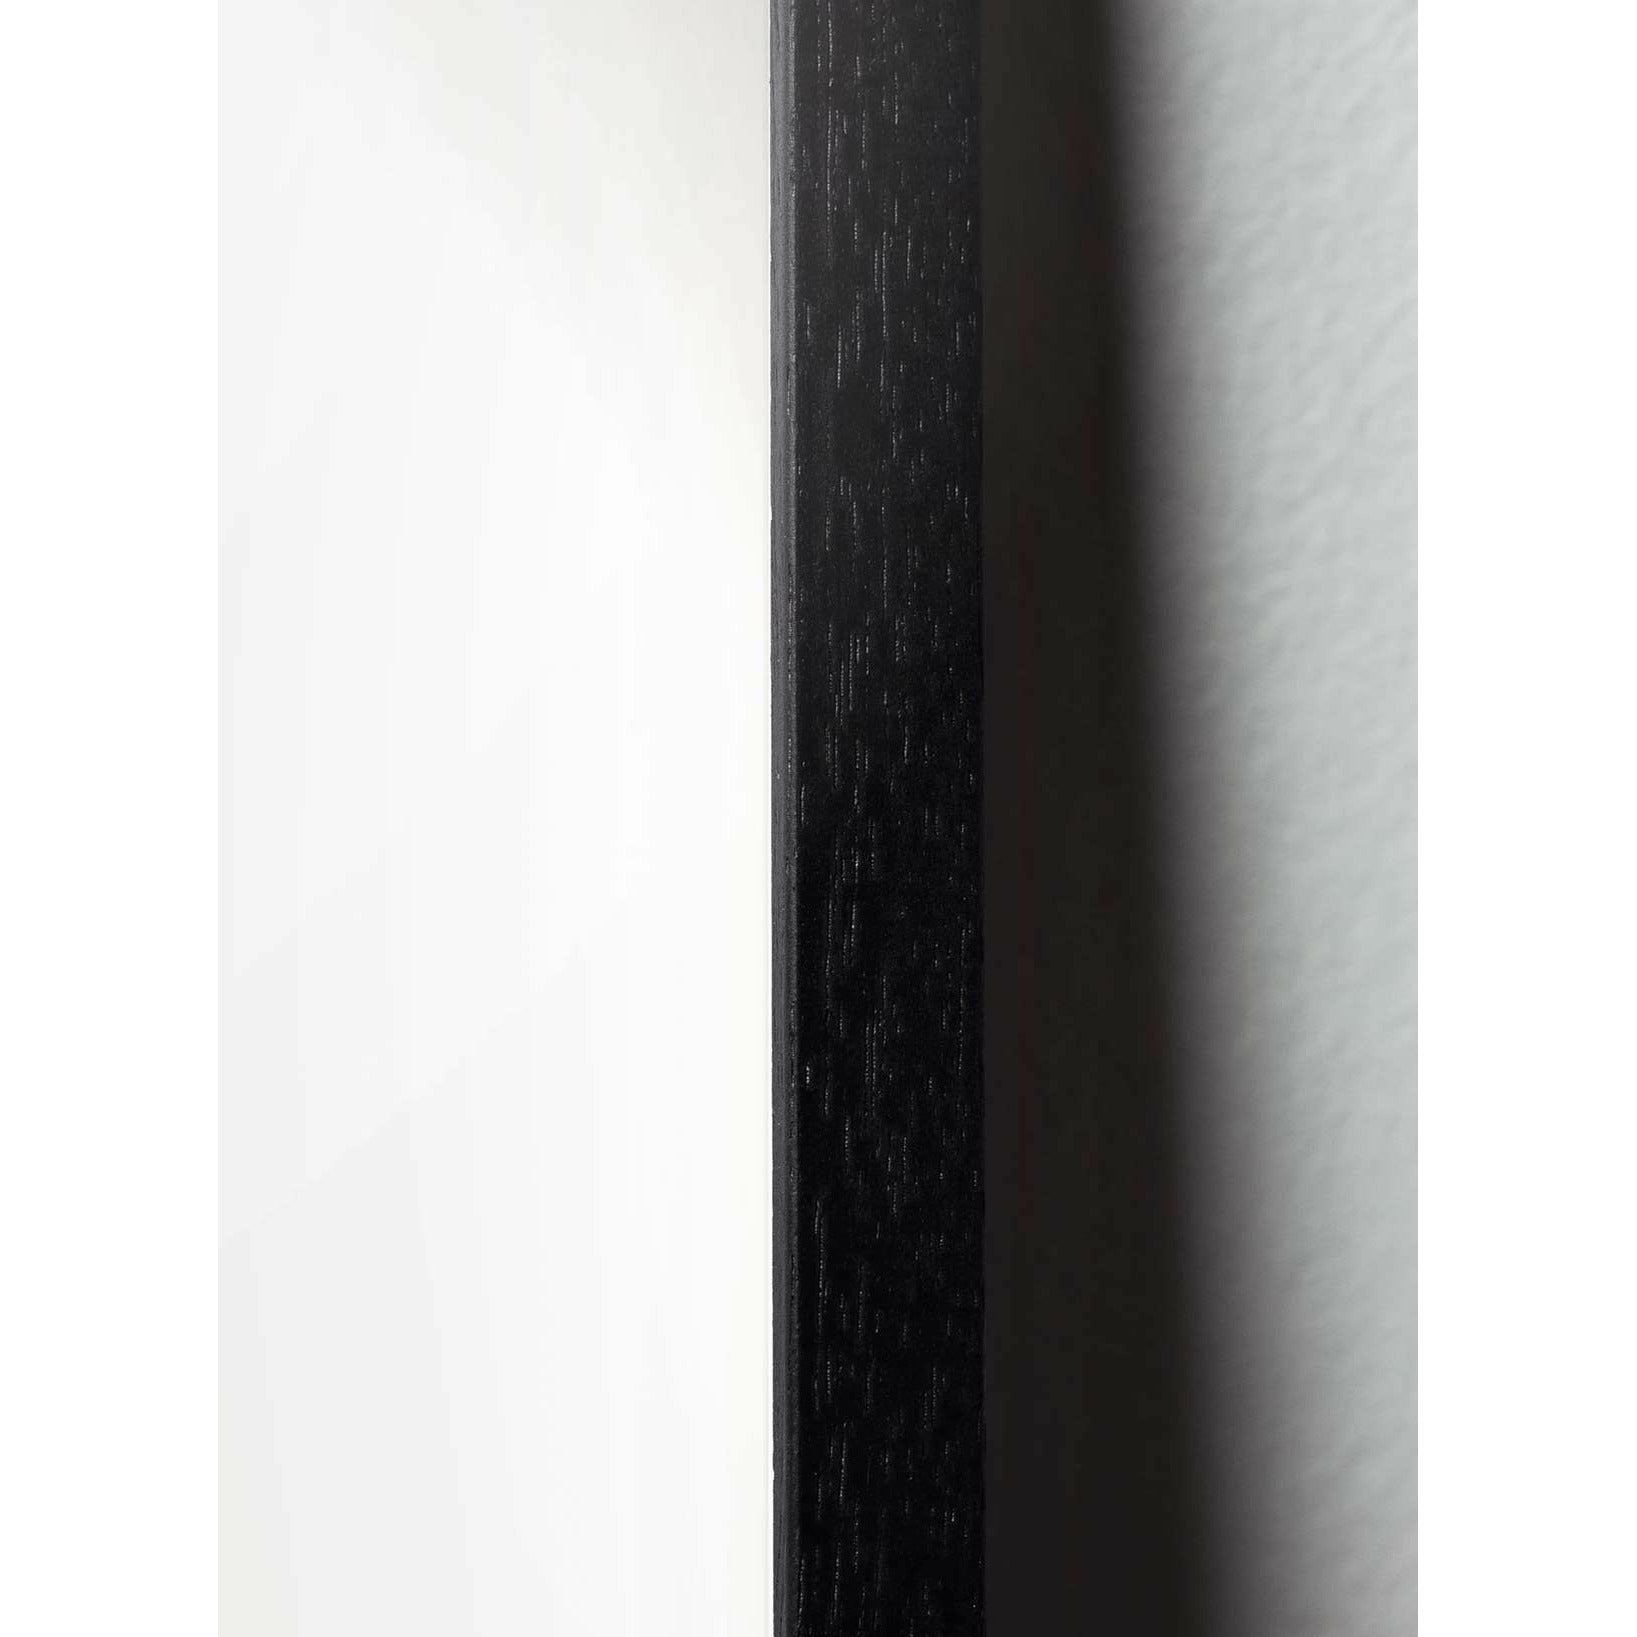 Brainchild Pine Cone Classic Poster, Rahmen aus schwarz lackiertem Holz A5, weißer Hintergrund